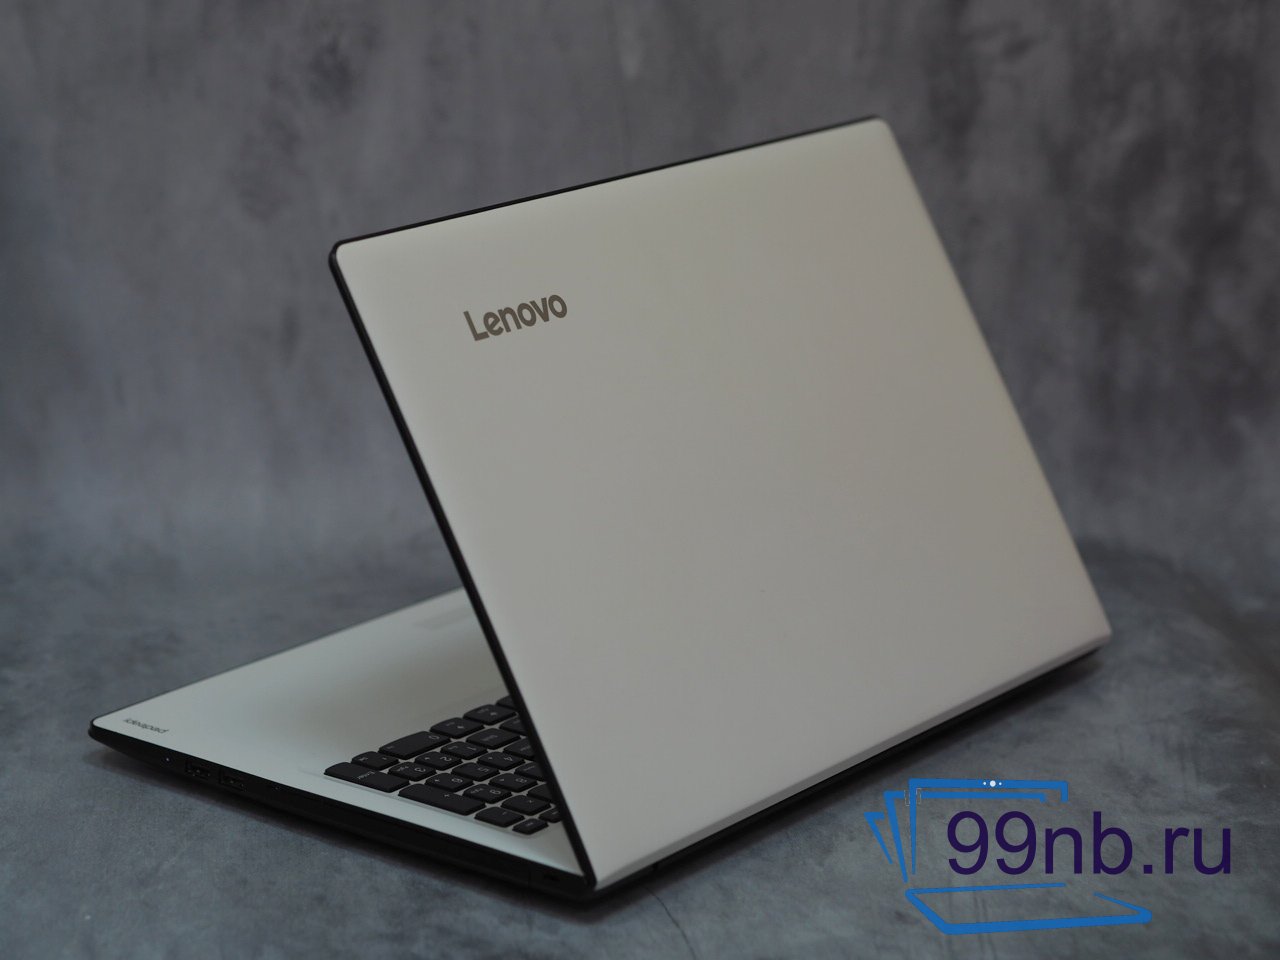  Игровой  Lenovo на i5/GeForce 920MX/12GB